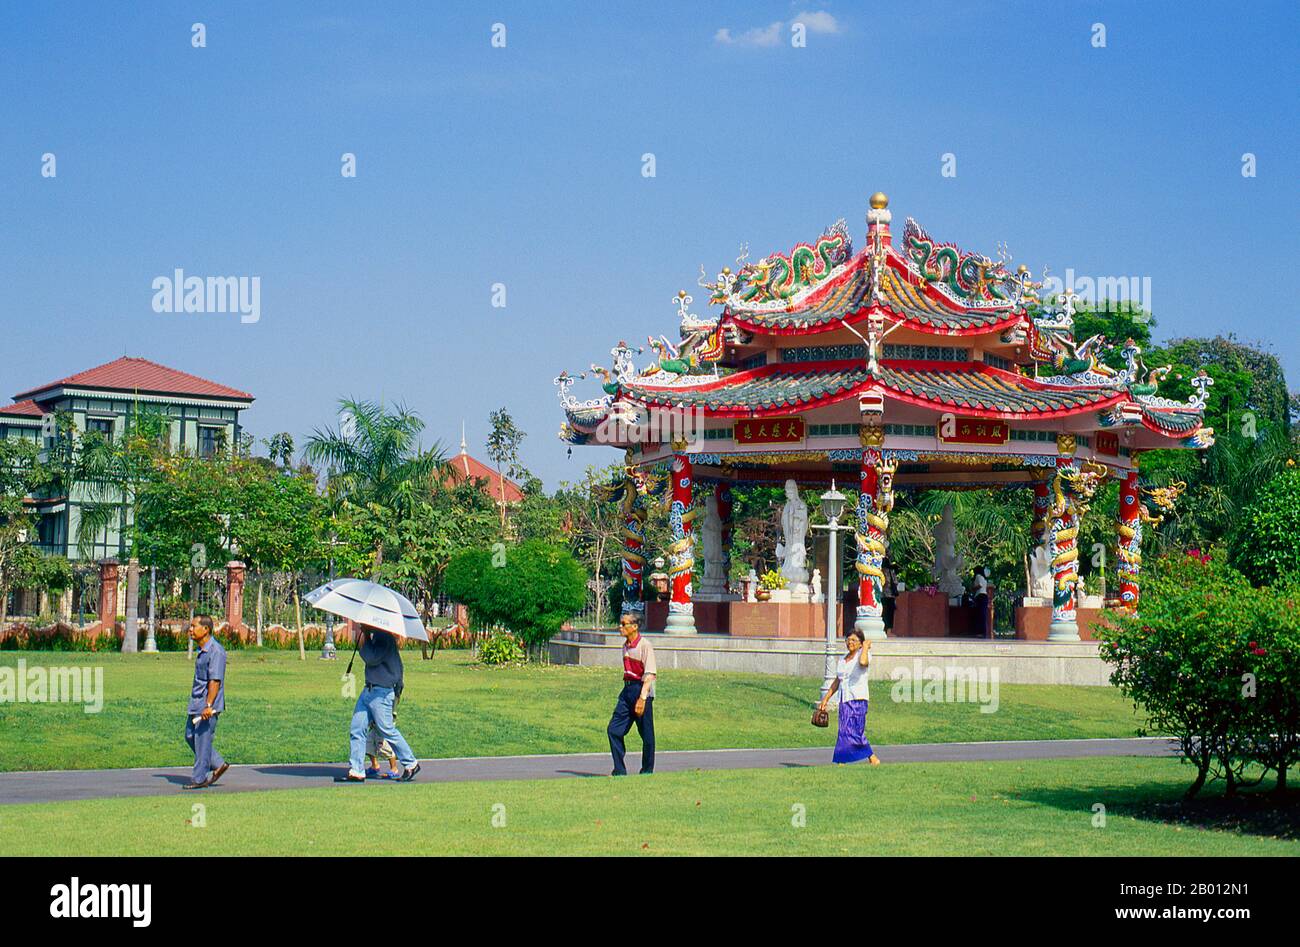 Thaïlande: Pavillon chinois, Hôtel Vimanmek, Parc Dusit, Bangkok. Le manoir de Vimanmek est un ancien palais royal, également connu sous le nom de manoir de Vimanmek ou Palais de Vimanmek. La résidence Vimanmek a été construite en 1900 par le roi Rama V (le roi Chulalongkorn) en faisant démonter et remonter la résidence Munthatu Rattanaroj à Chuthathuj Rachathan à Ko Sichang, Chonburi, dans le jardin Dusit. Il a été achevé en 1901 et utilisé comme palais royal par le roi Rama V pendant cinq ans. En 1982, la reine Sirikit demande la permission du roi Rama IX (Bhumibol Adulyadej) de rénover le Palais Vimanmek en musée. Banque D'Images